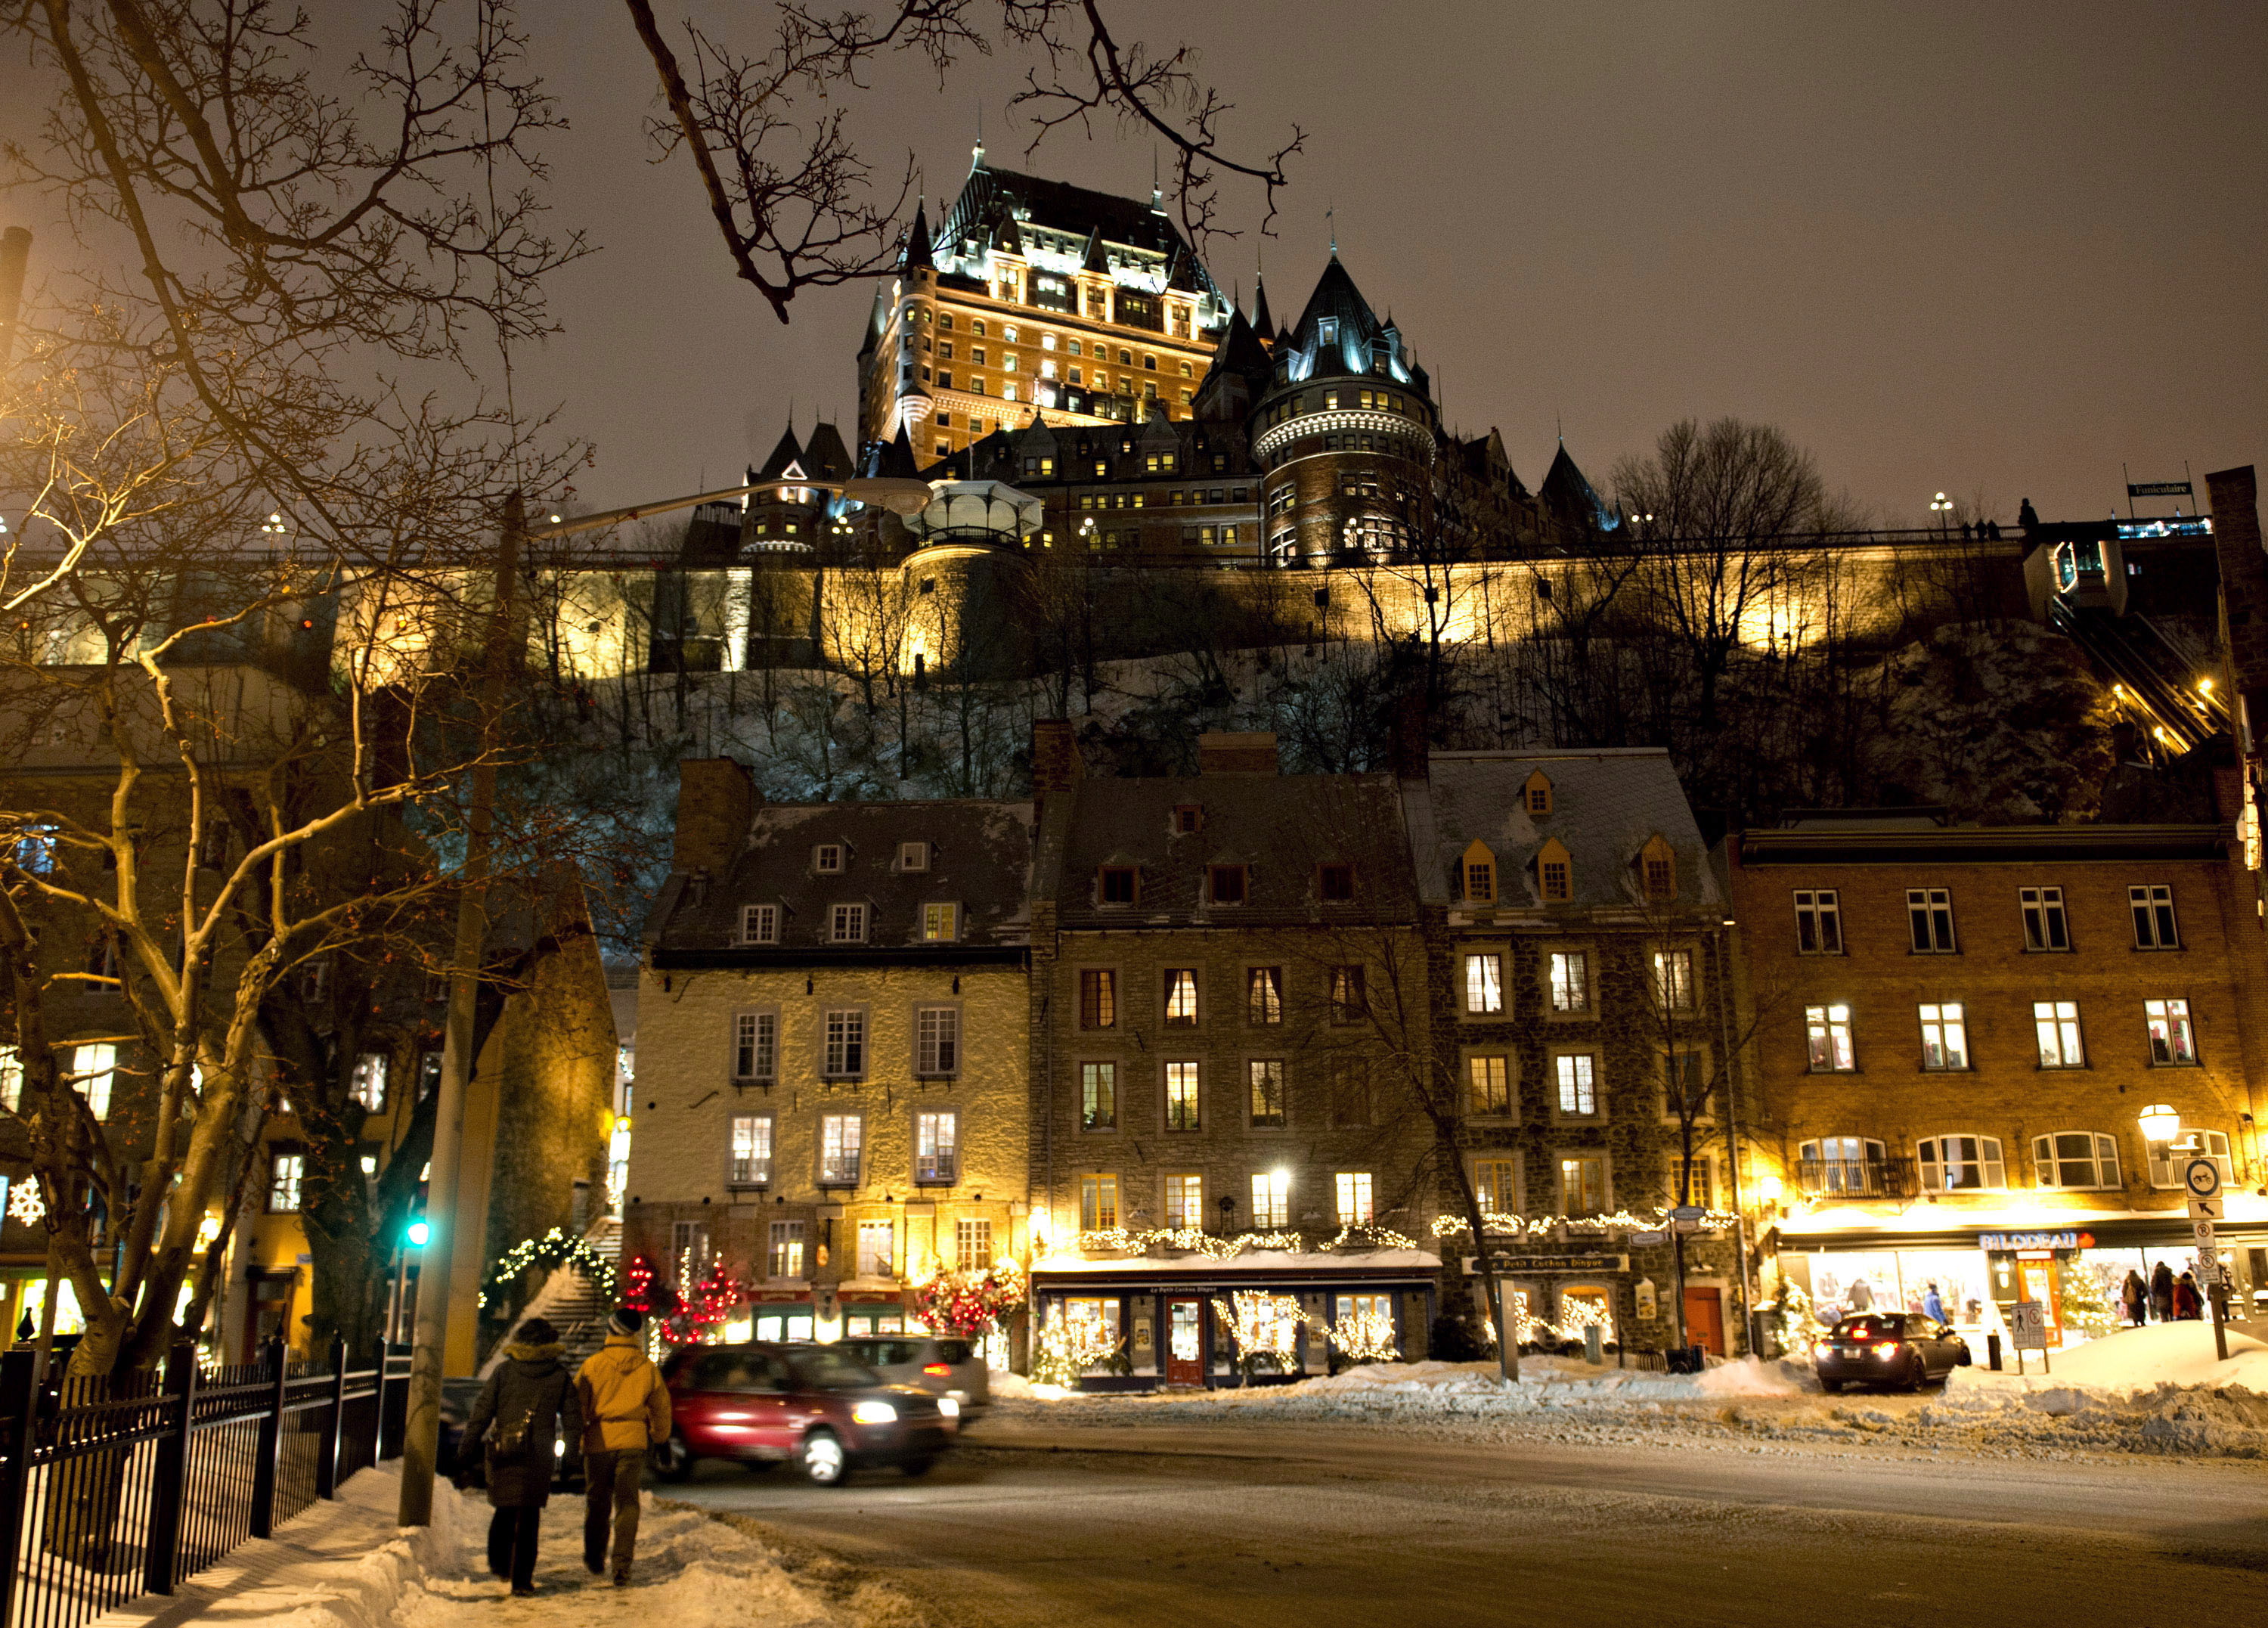  Das Chateau Frontenac in der Altstadt von Quebec City Montag, Dez. 23, 2013.